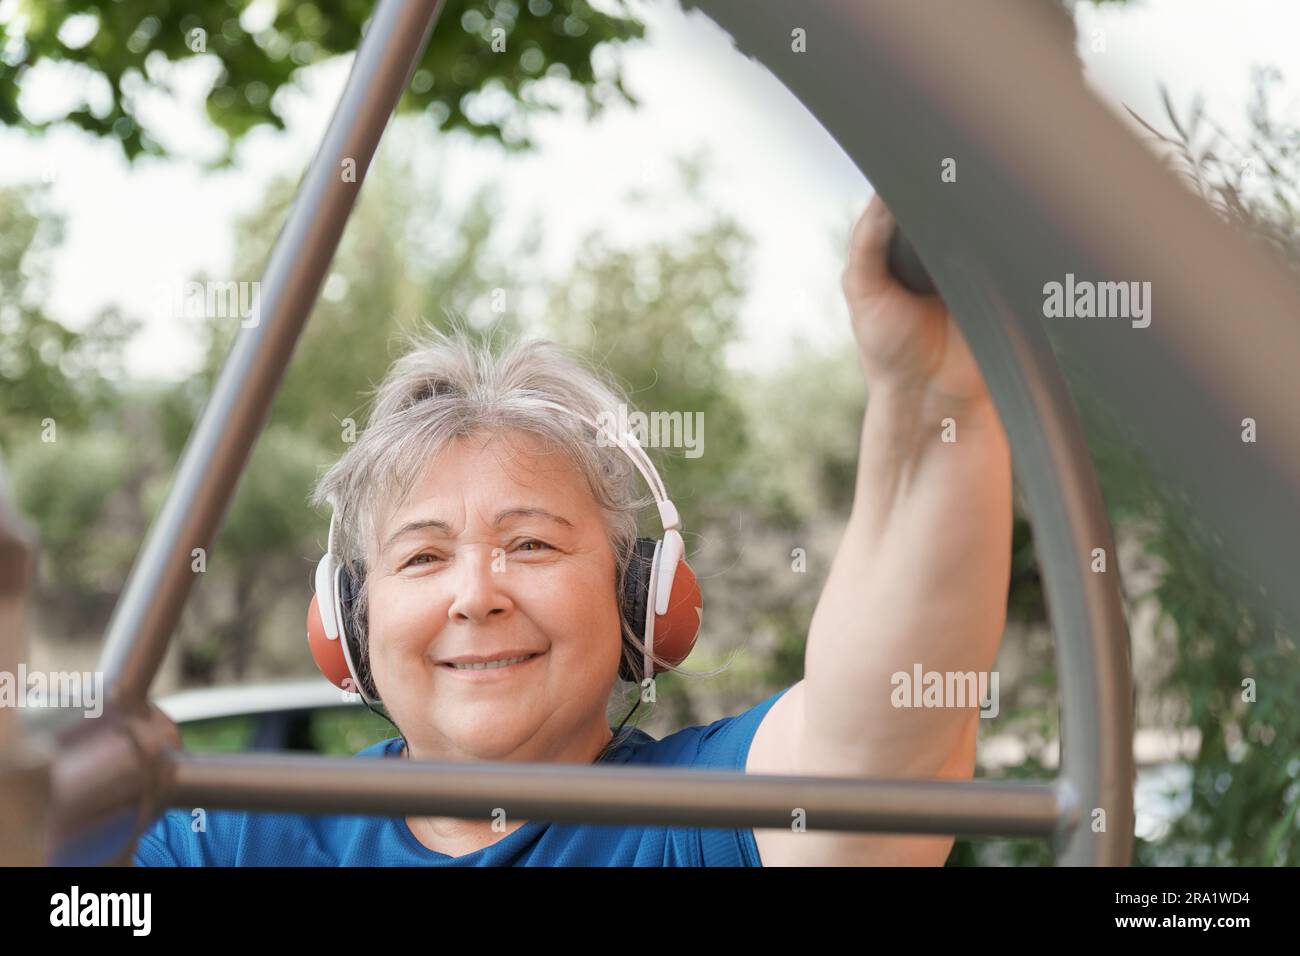 donna anziana attiva che si allena con una macchina per esercizi nel parco Foto Stock